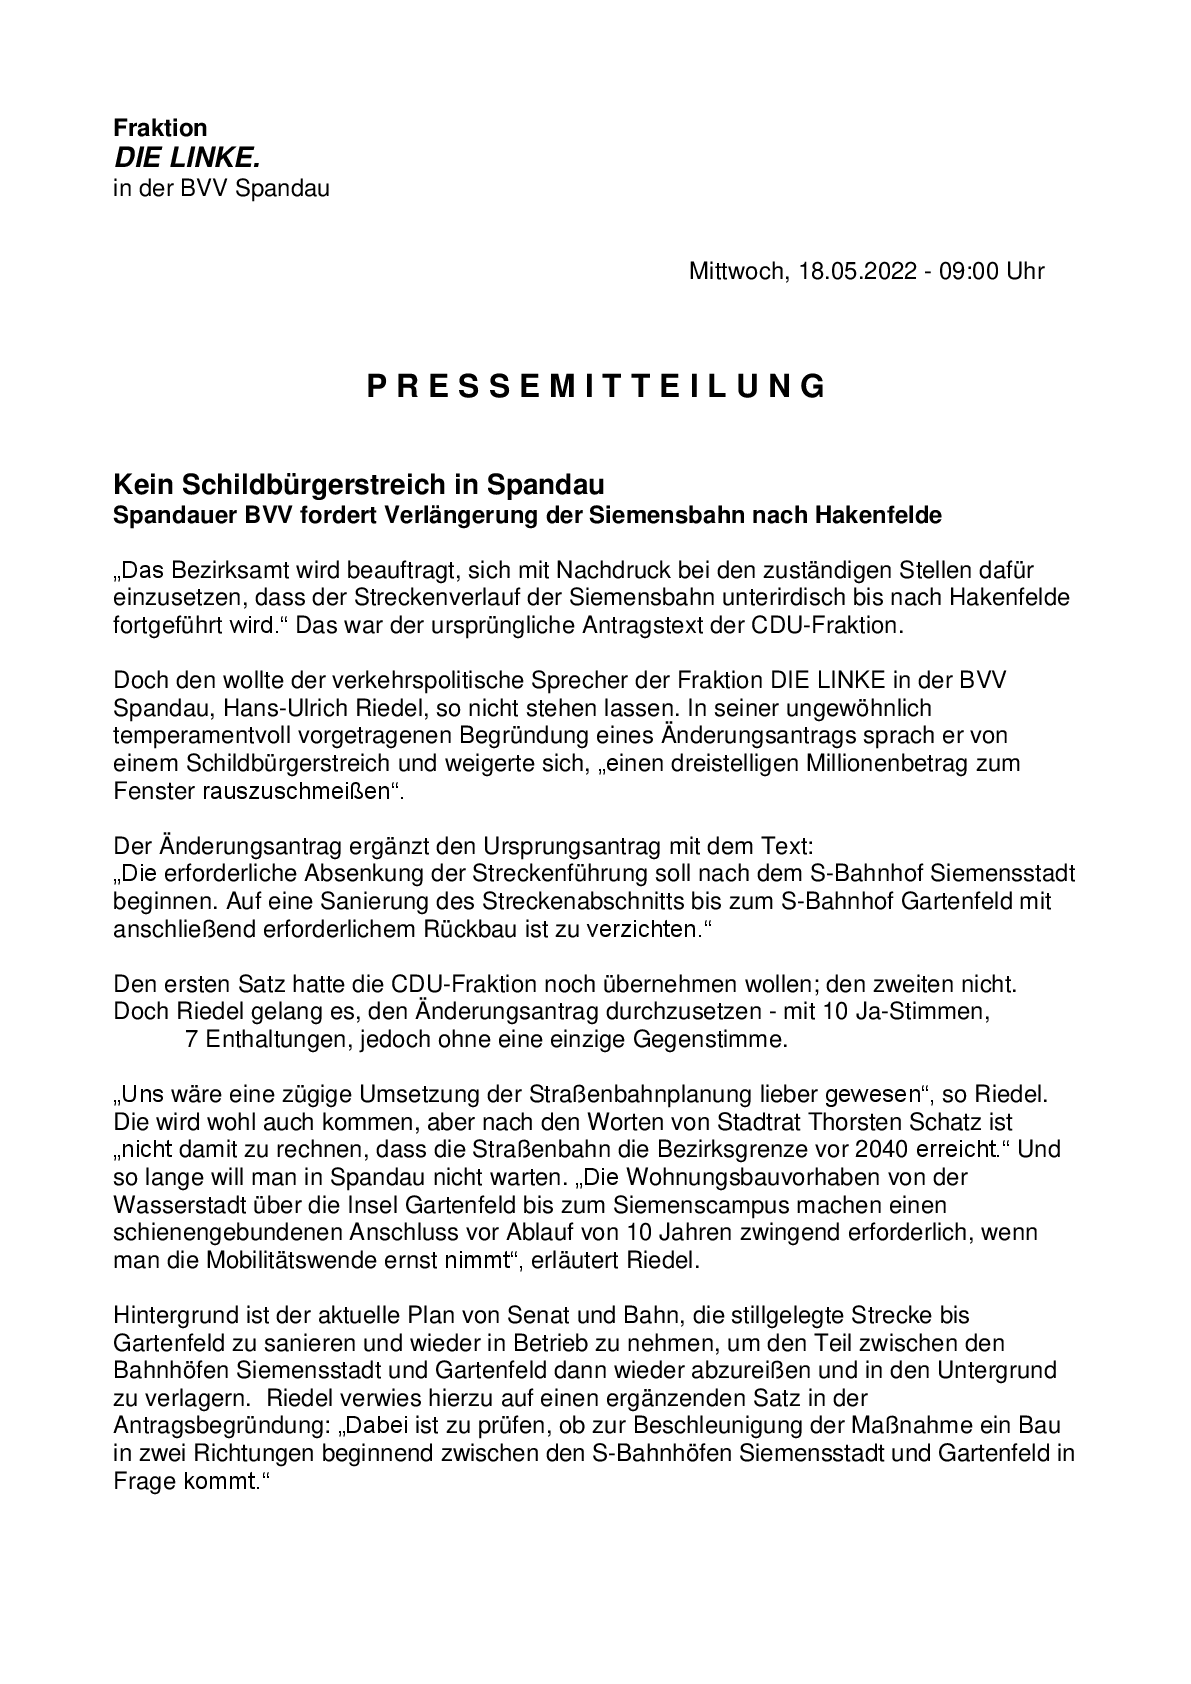 PM 180522 - Kein Schildburgerstreich-001.png